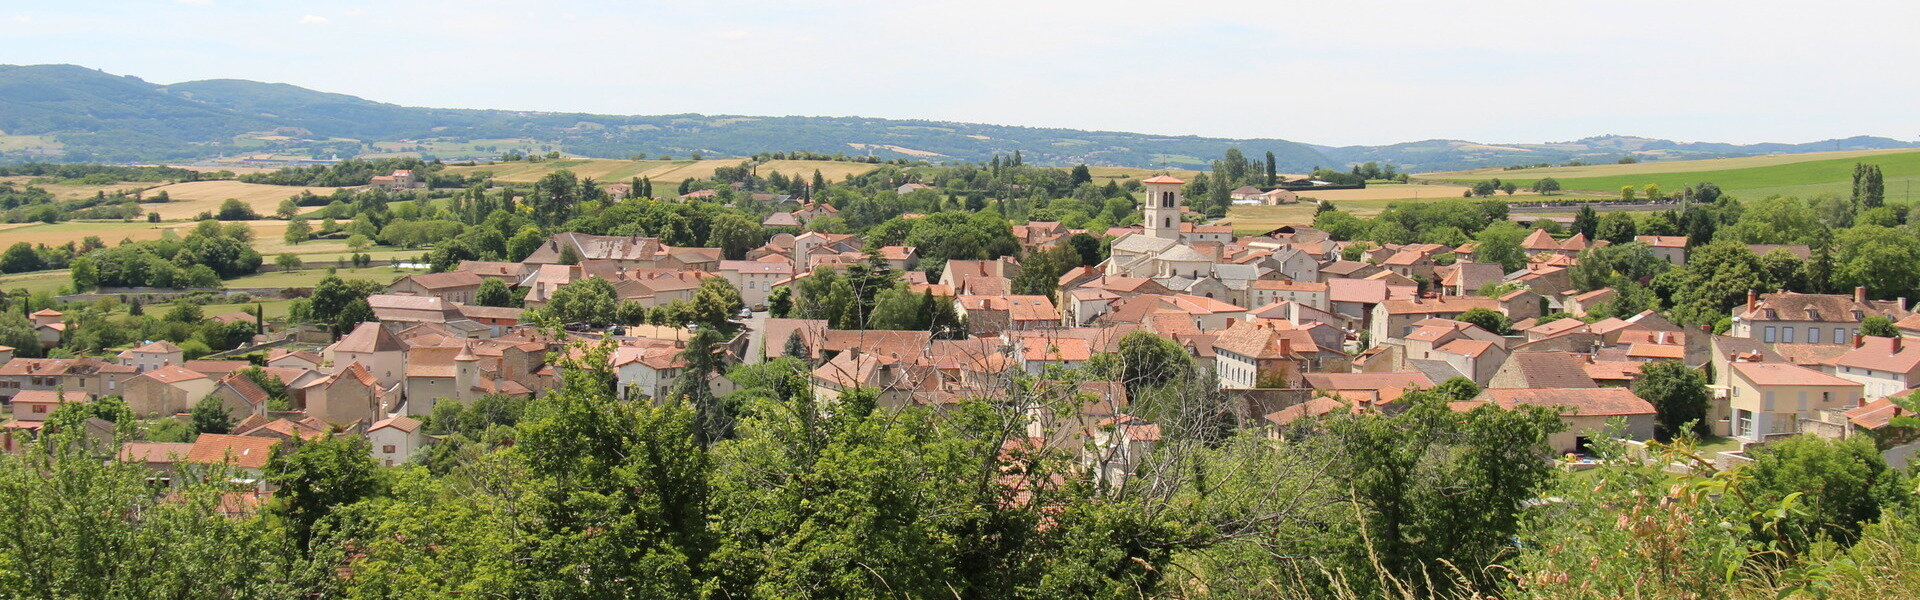 Commune Mairie Tourisme Puy-de-Dôme Auvergne